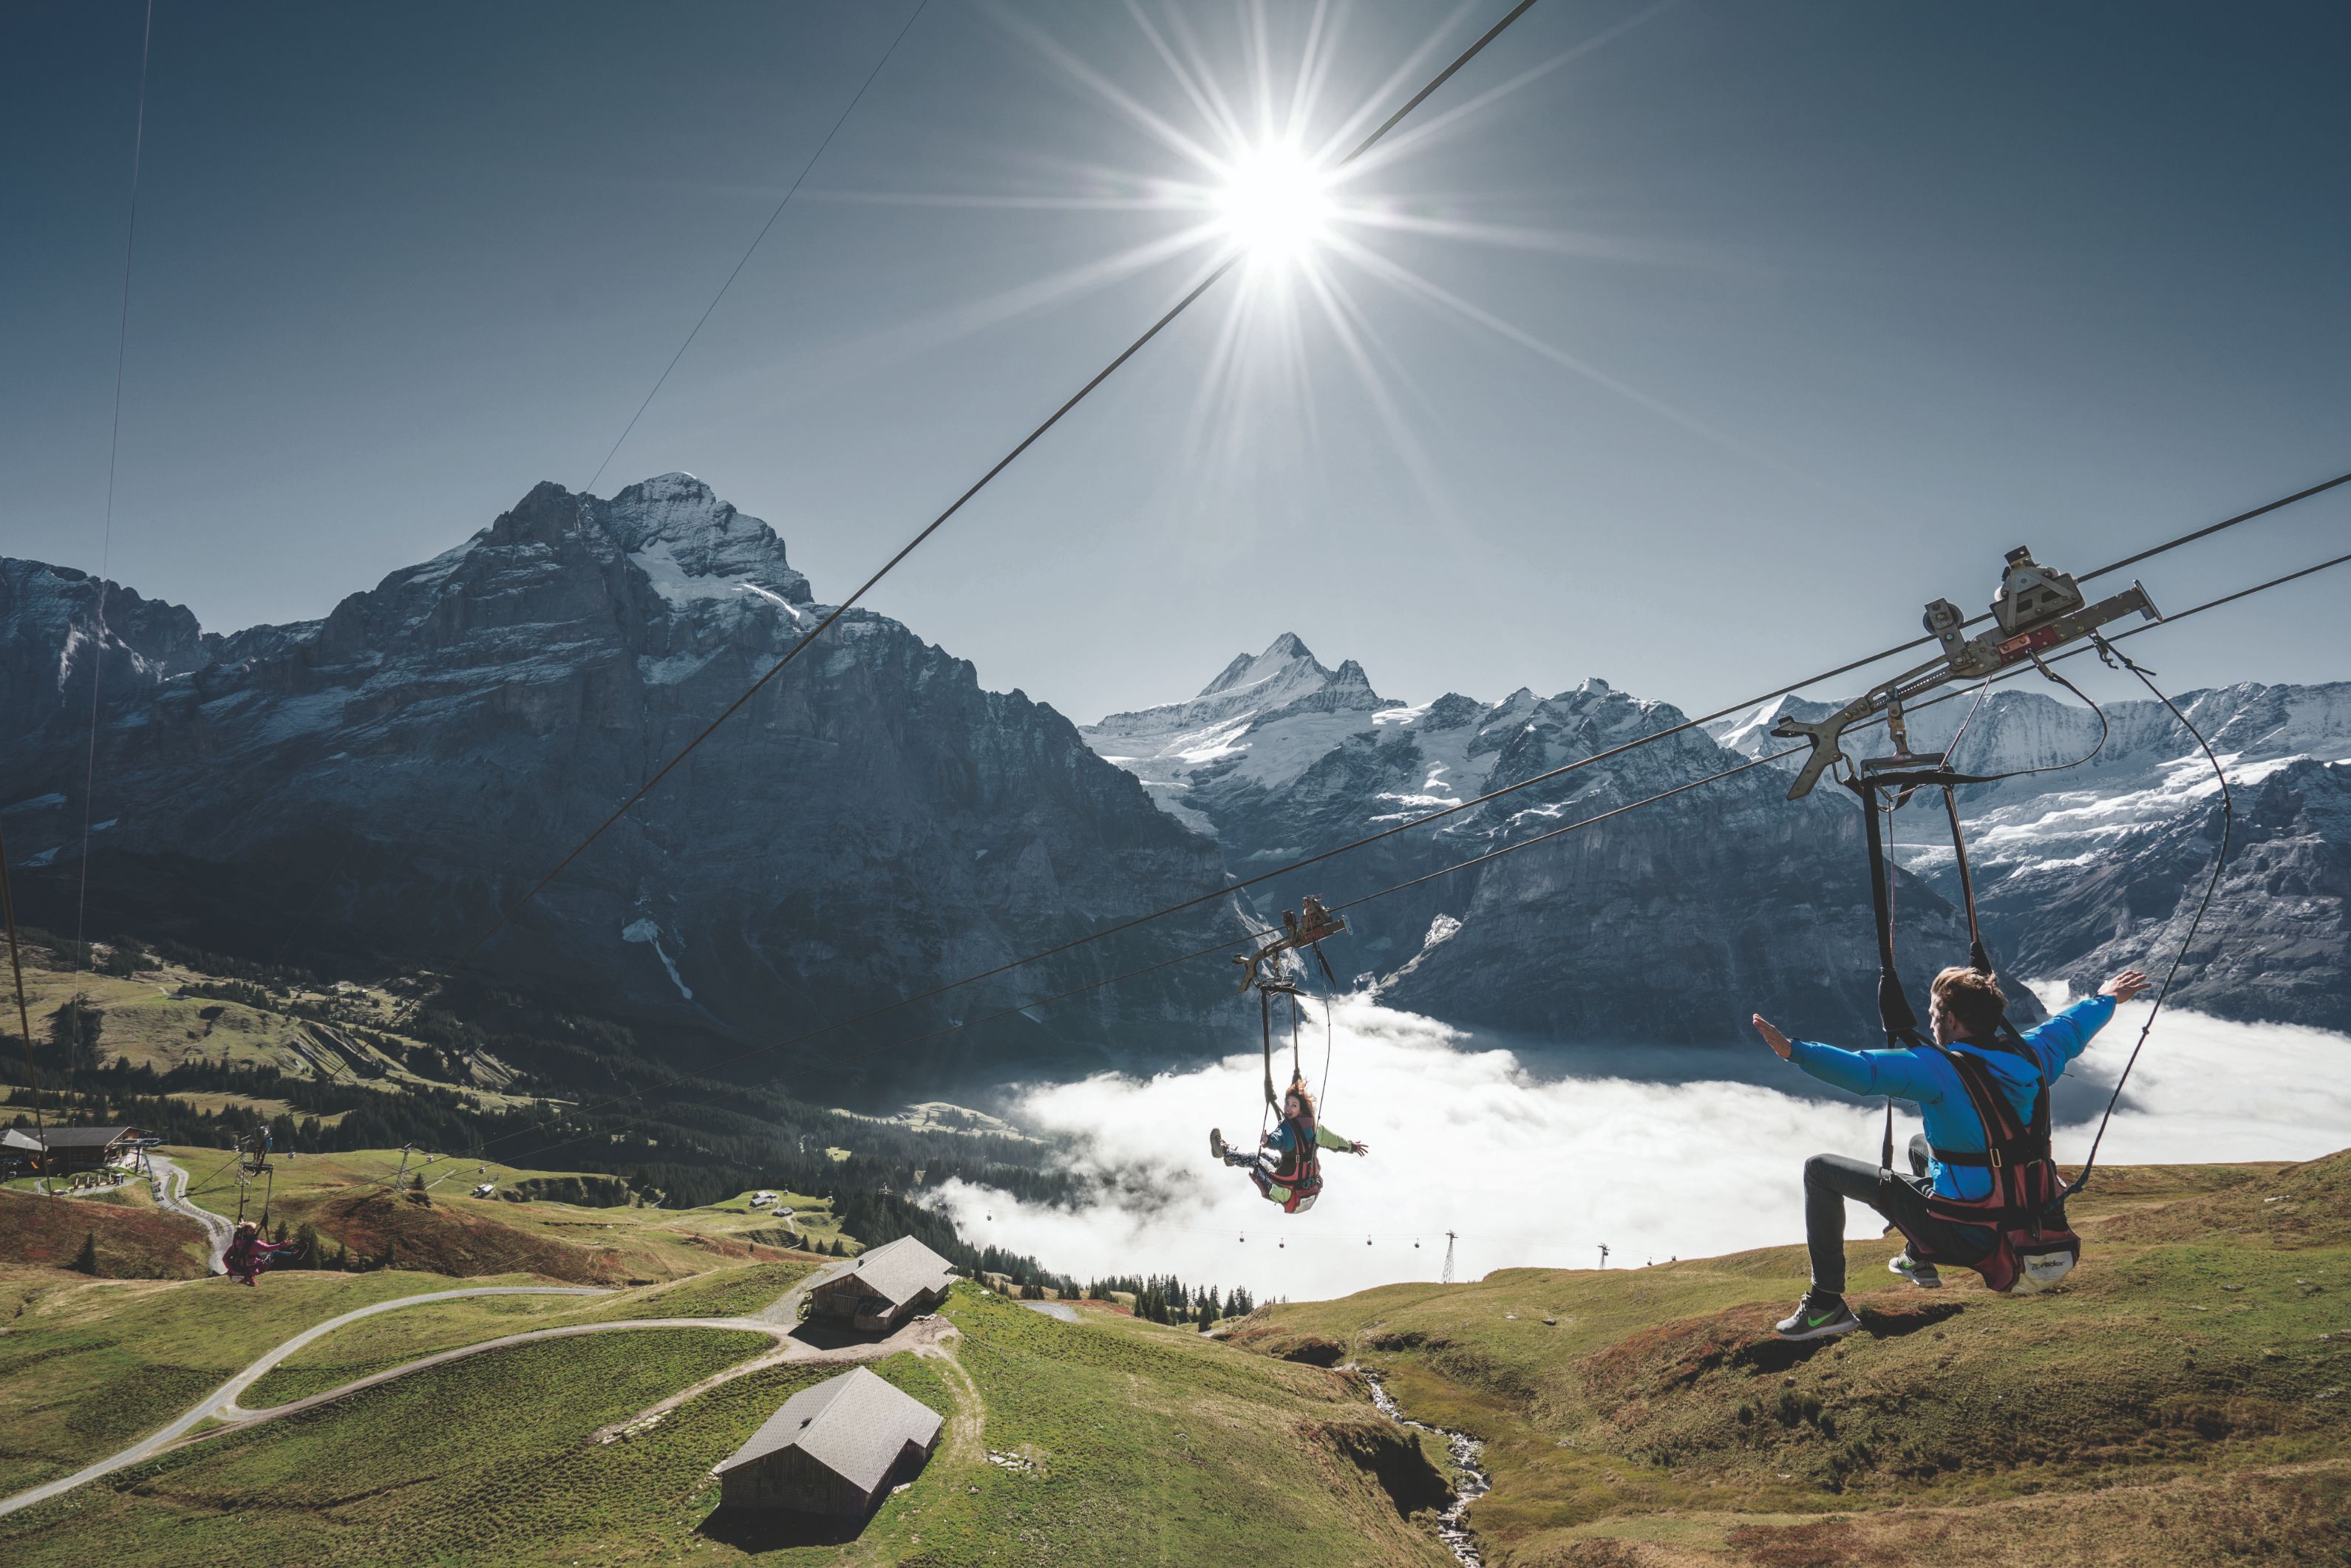 Ziplining in Jungfrau, Switzerland